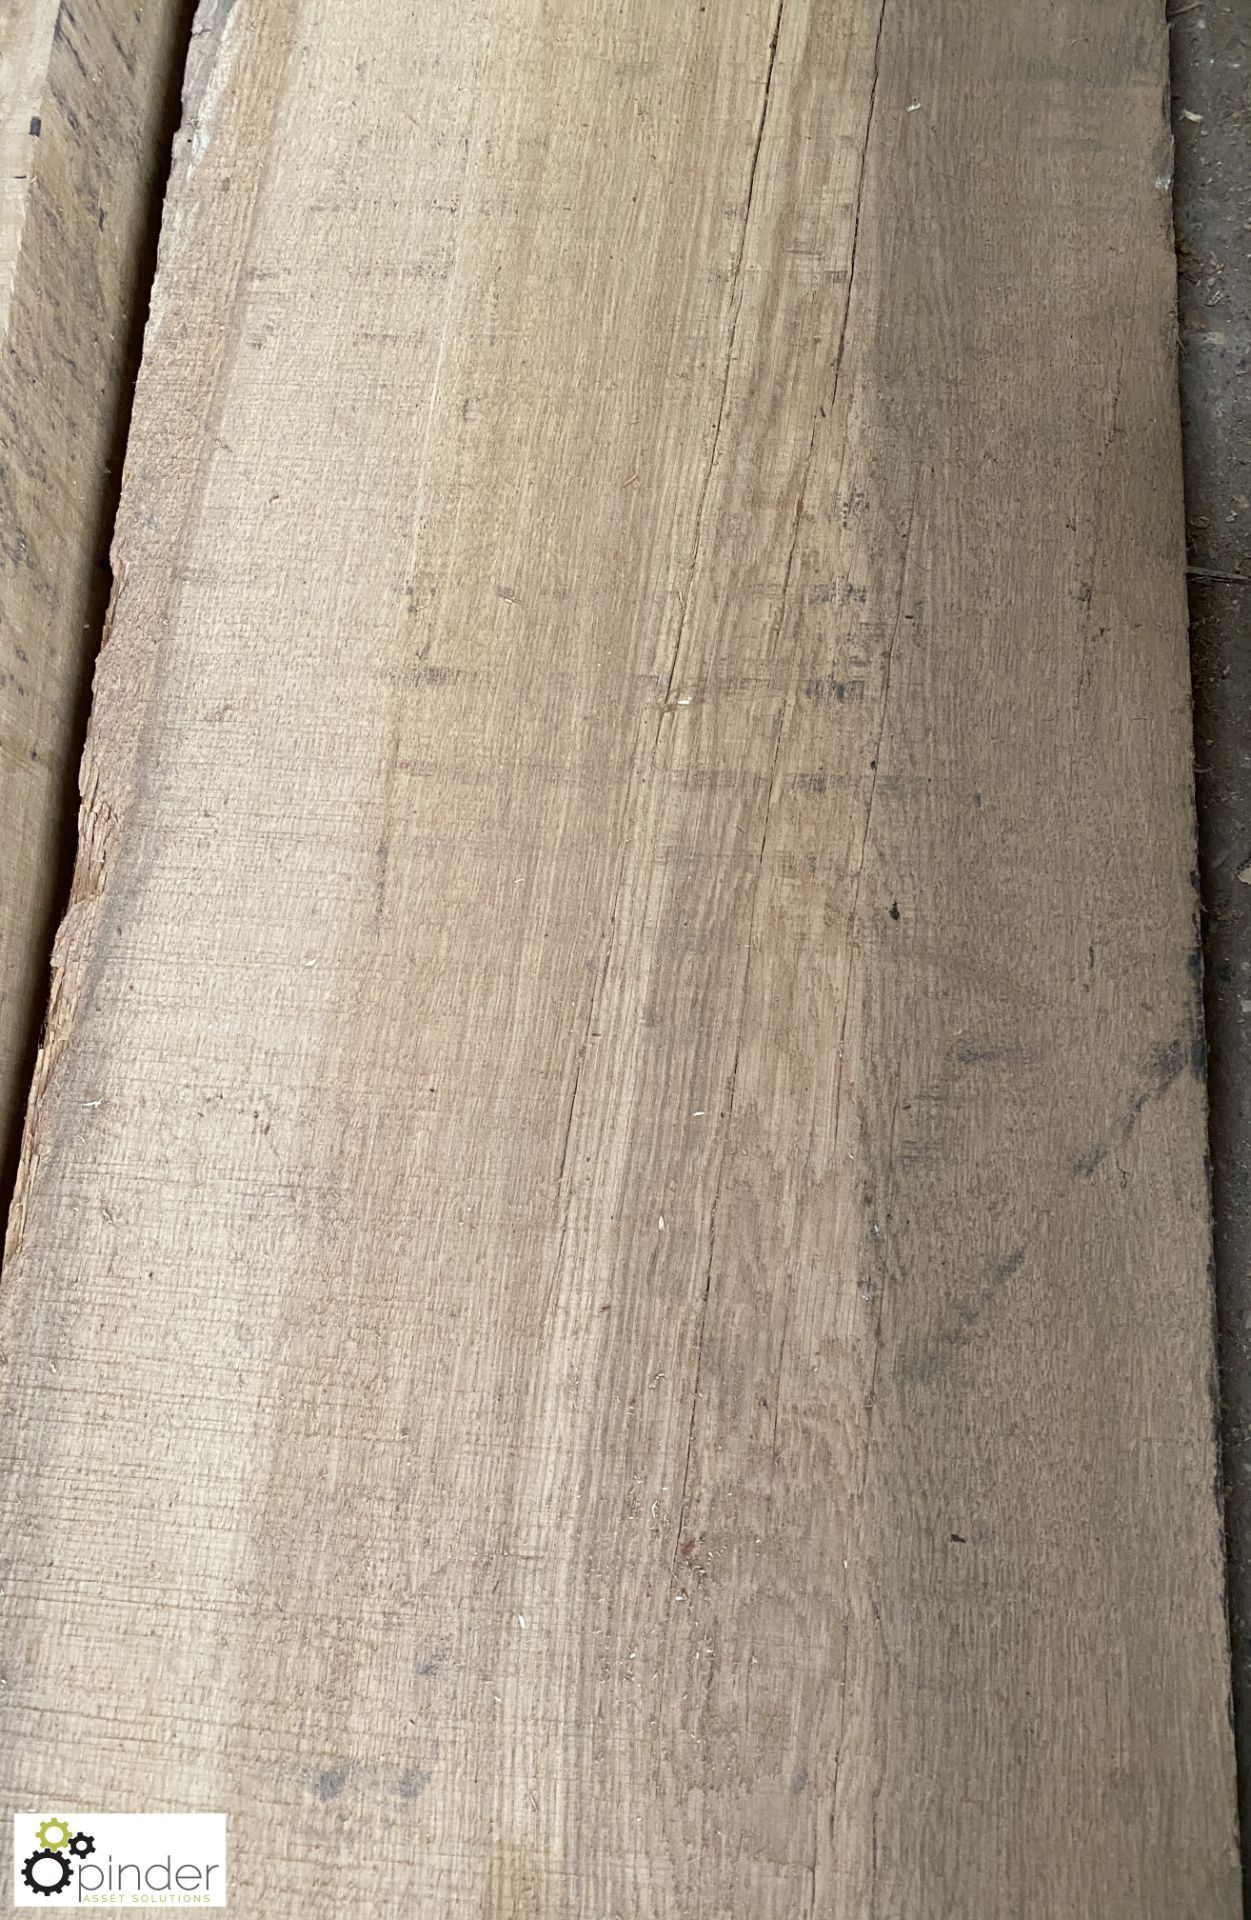 Air dried Oak Board, 6200mm x 370mm x 60mm - Image 4 of 7